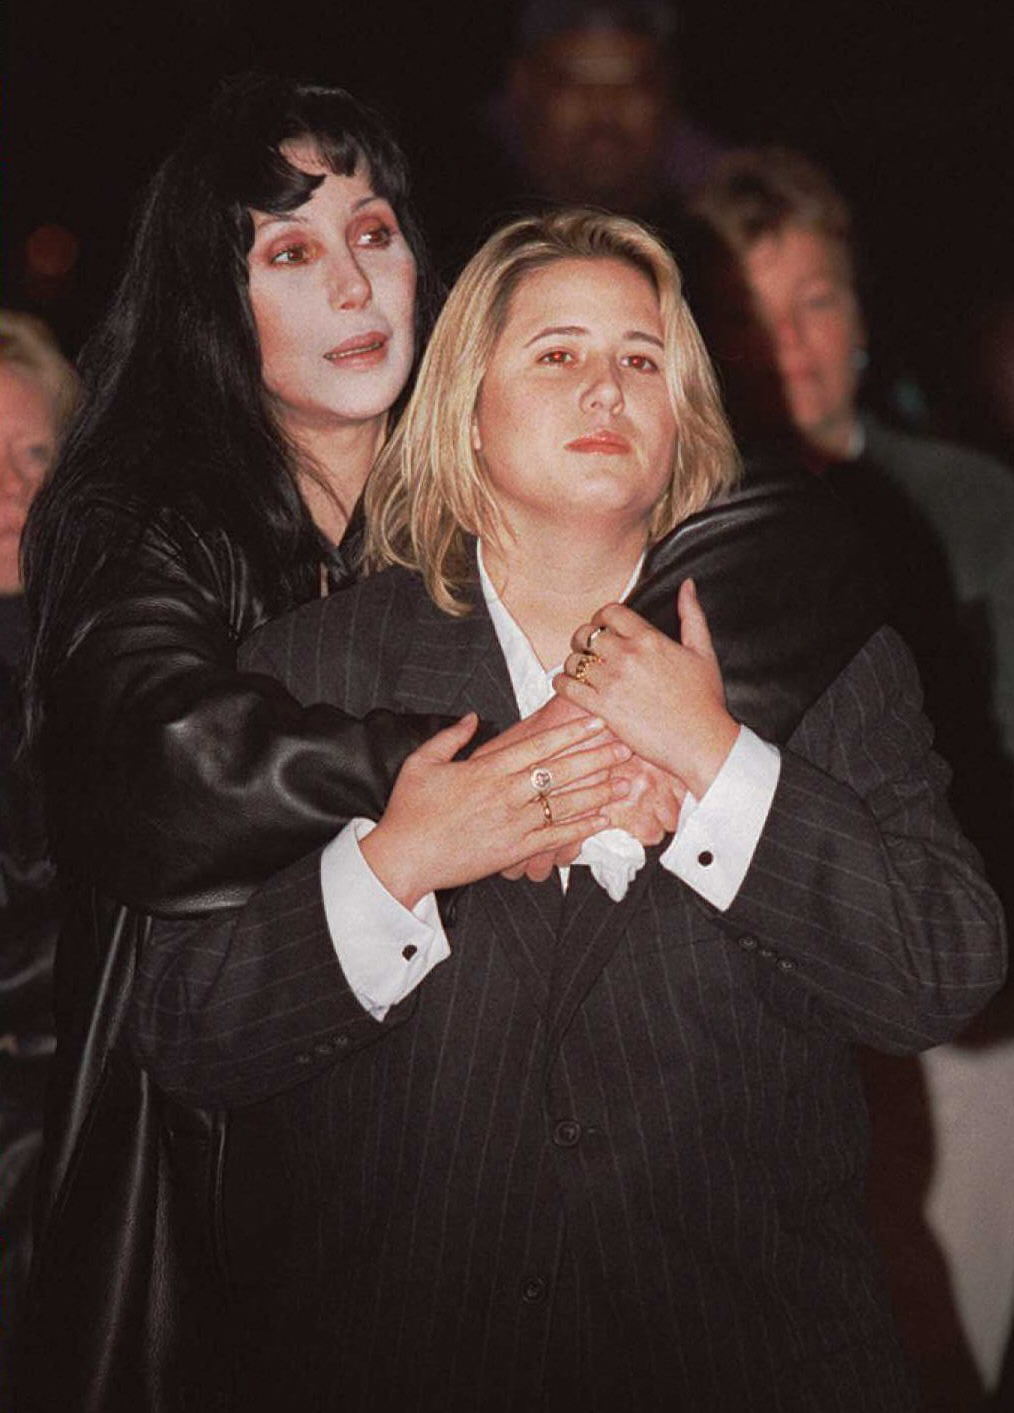 Cher réconforte Chastity Bono lors d'un rassemblement pour le "National Coming Out Day" à Washington DC, le 11 octobre 1996. | Source : Getty Images